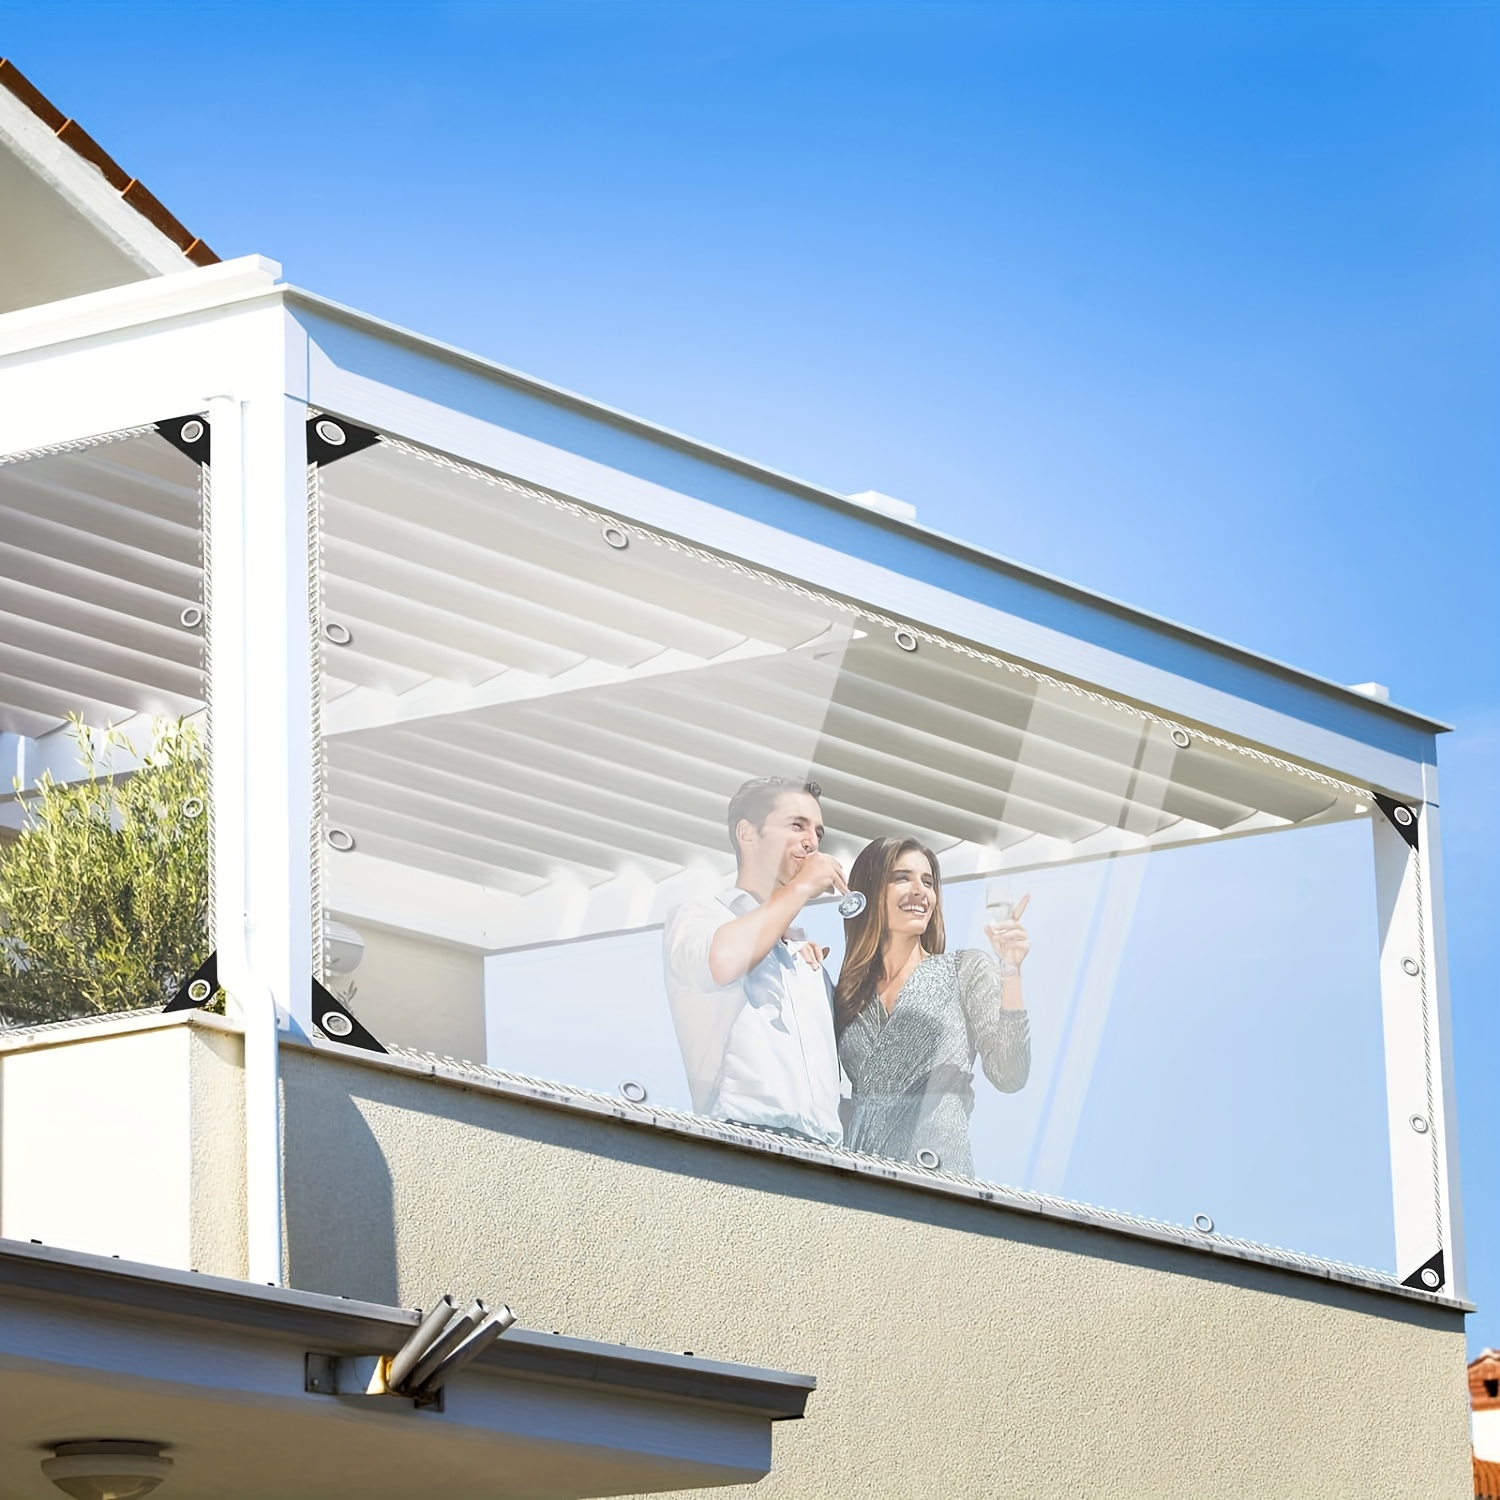  ZXCVASDF Lona impermeable transparente de 0.014 in de grosor,  lona de PVC con ojales antioxidantes, cubierta transparente resistente al  desgarro, para campamento, invernadero, patio y pabellón, personalizable,  5.2 x 6.6 ft/5.2